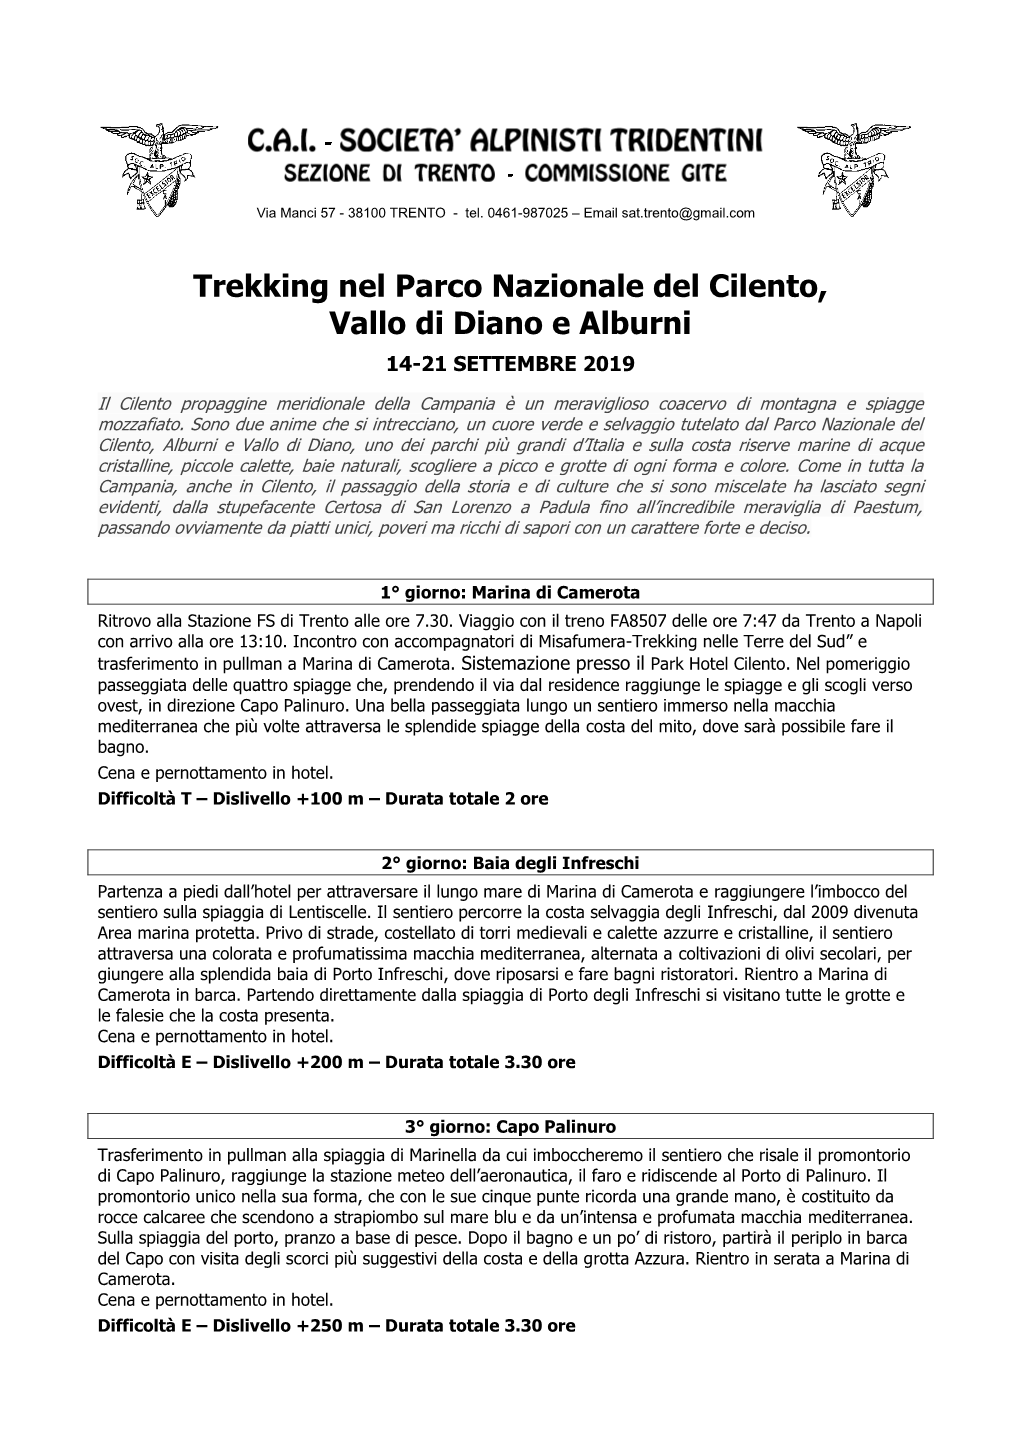 Trekking Nel Parco Nazionale Del Cilento, Vallo Di Diano E Alburni 14-21 SETTEMBRE 2019